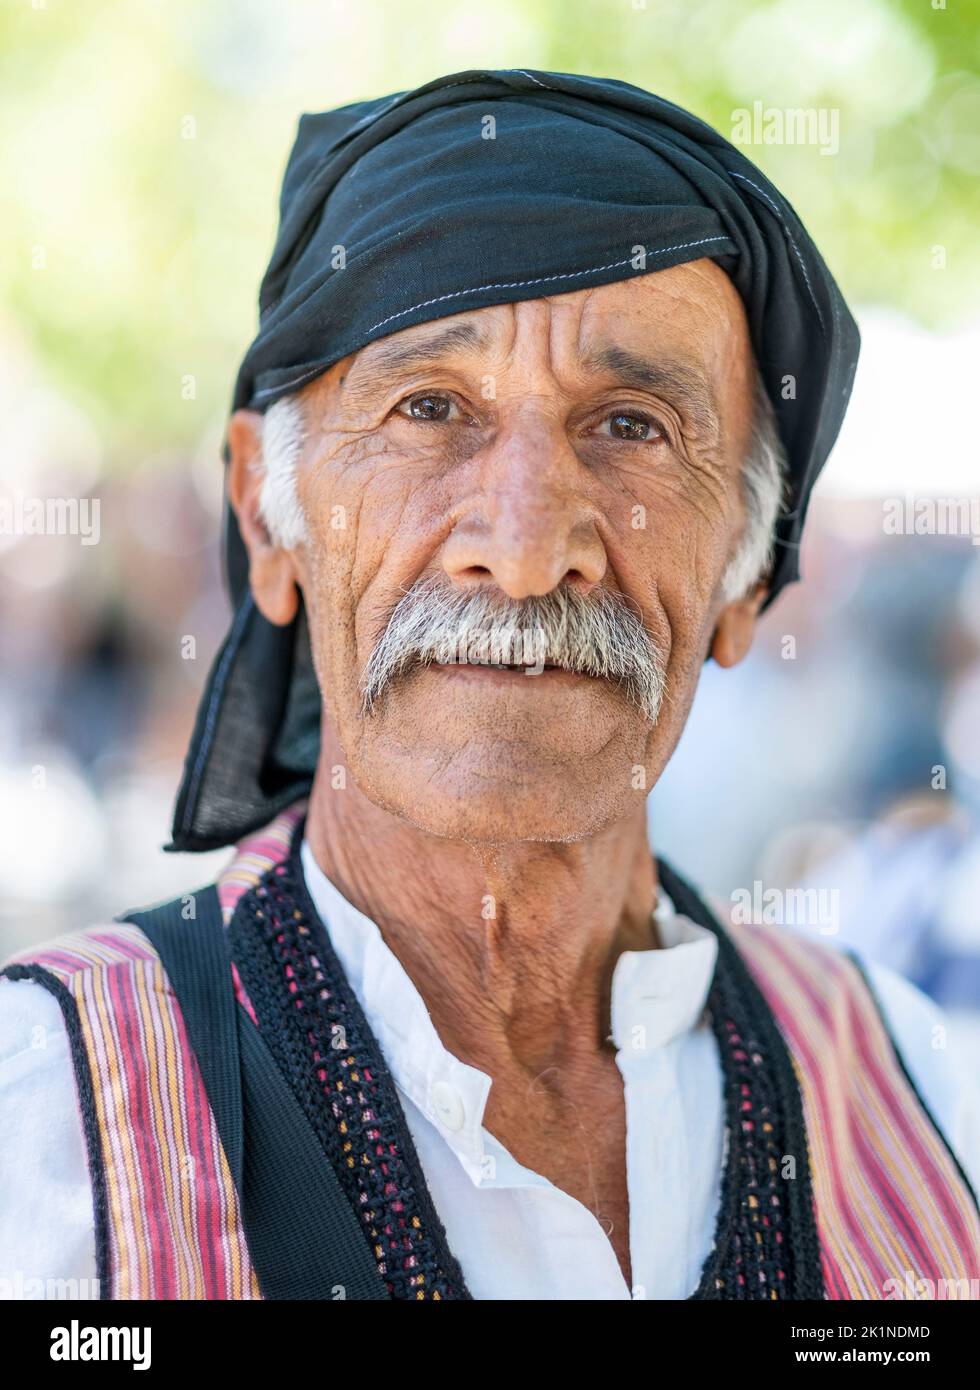 Portrait d'un chypriote en robe traditionnelle au Festival rural Statos-Agios Fotios, région de Paphos, Chypre. Banque D'Images